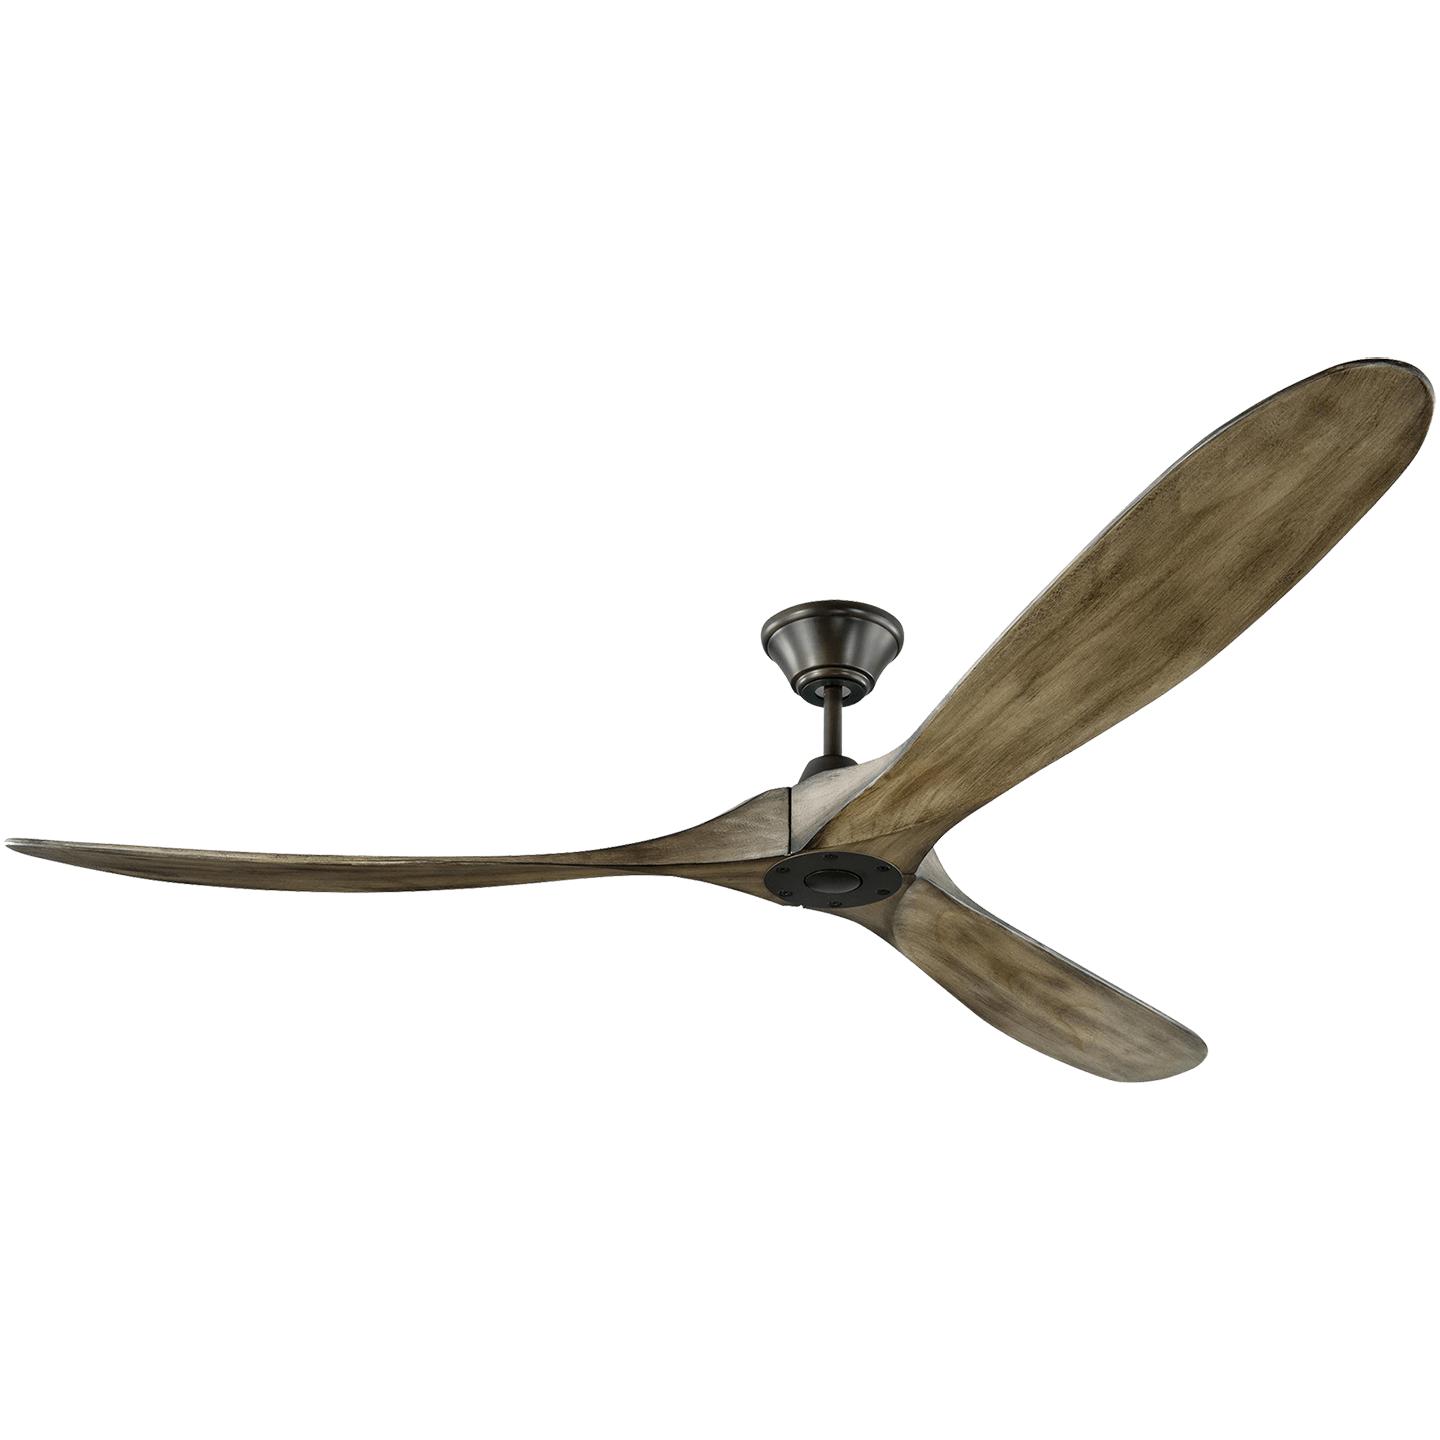 Купить Потолочный вентилятор Maverick 70" Ceiling Fan в интернет-магазине roooms.ru